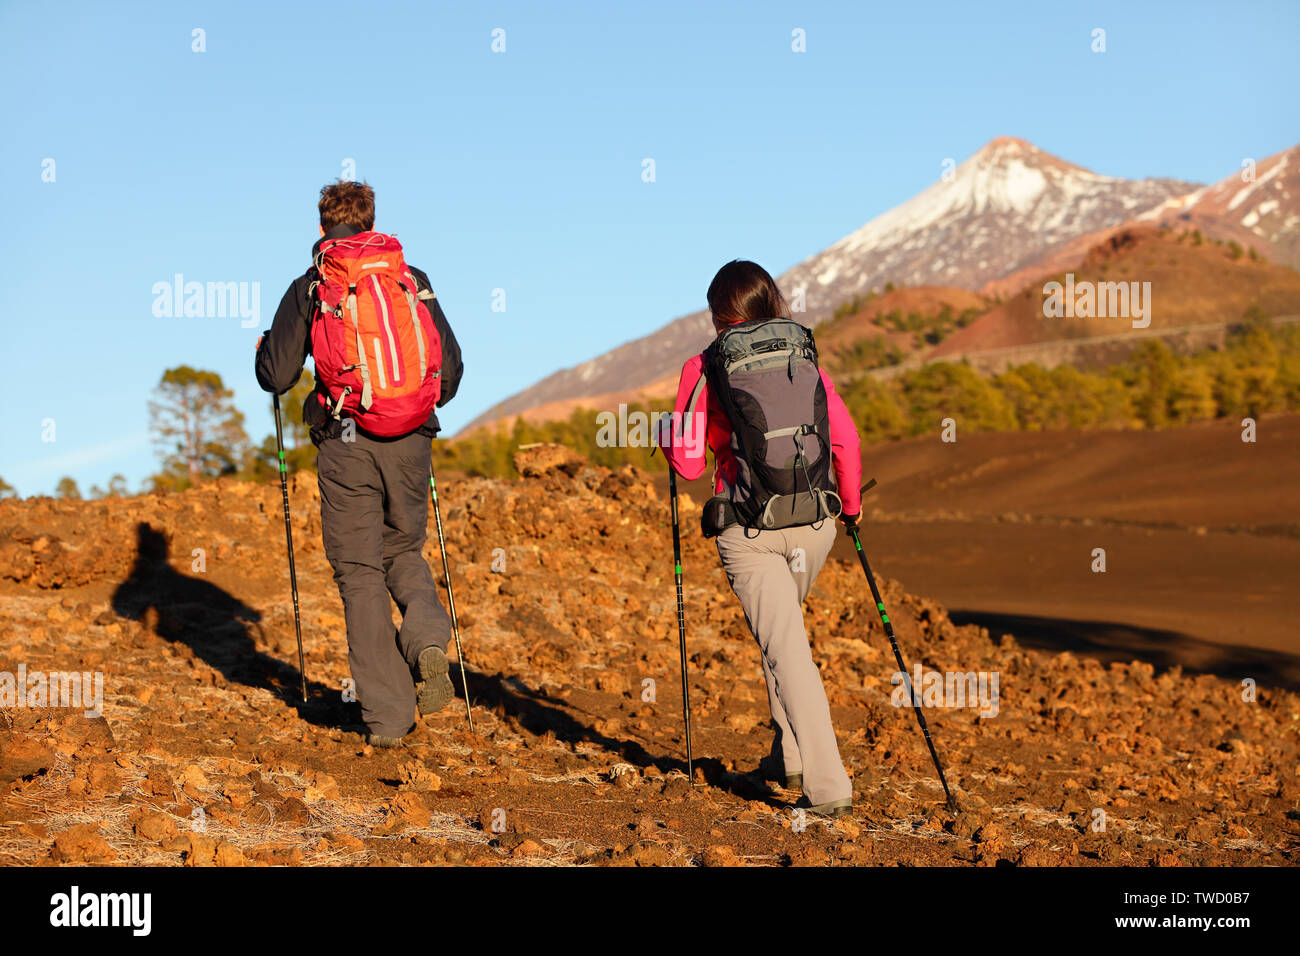 Wandern Menschen - gesunden, aktiven Lebensstil Paar. Wanderer zu Fuß in die hintere Ansicht von hinten in der herrlichen Bergwelt. Frau und Mann zu Fuß auf Wanderung auf den Vulkan Teide, Teneriffa, Kanarische Inseln, Spanien. Stockfoto